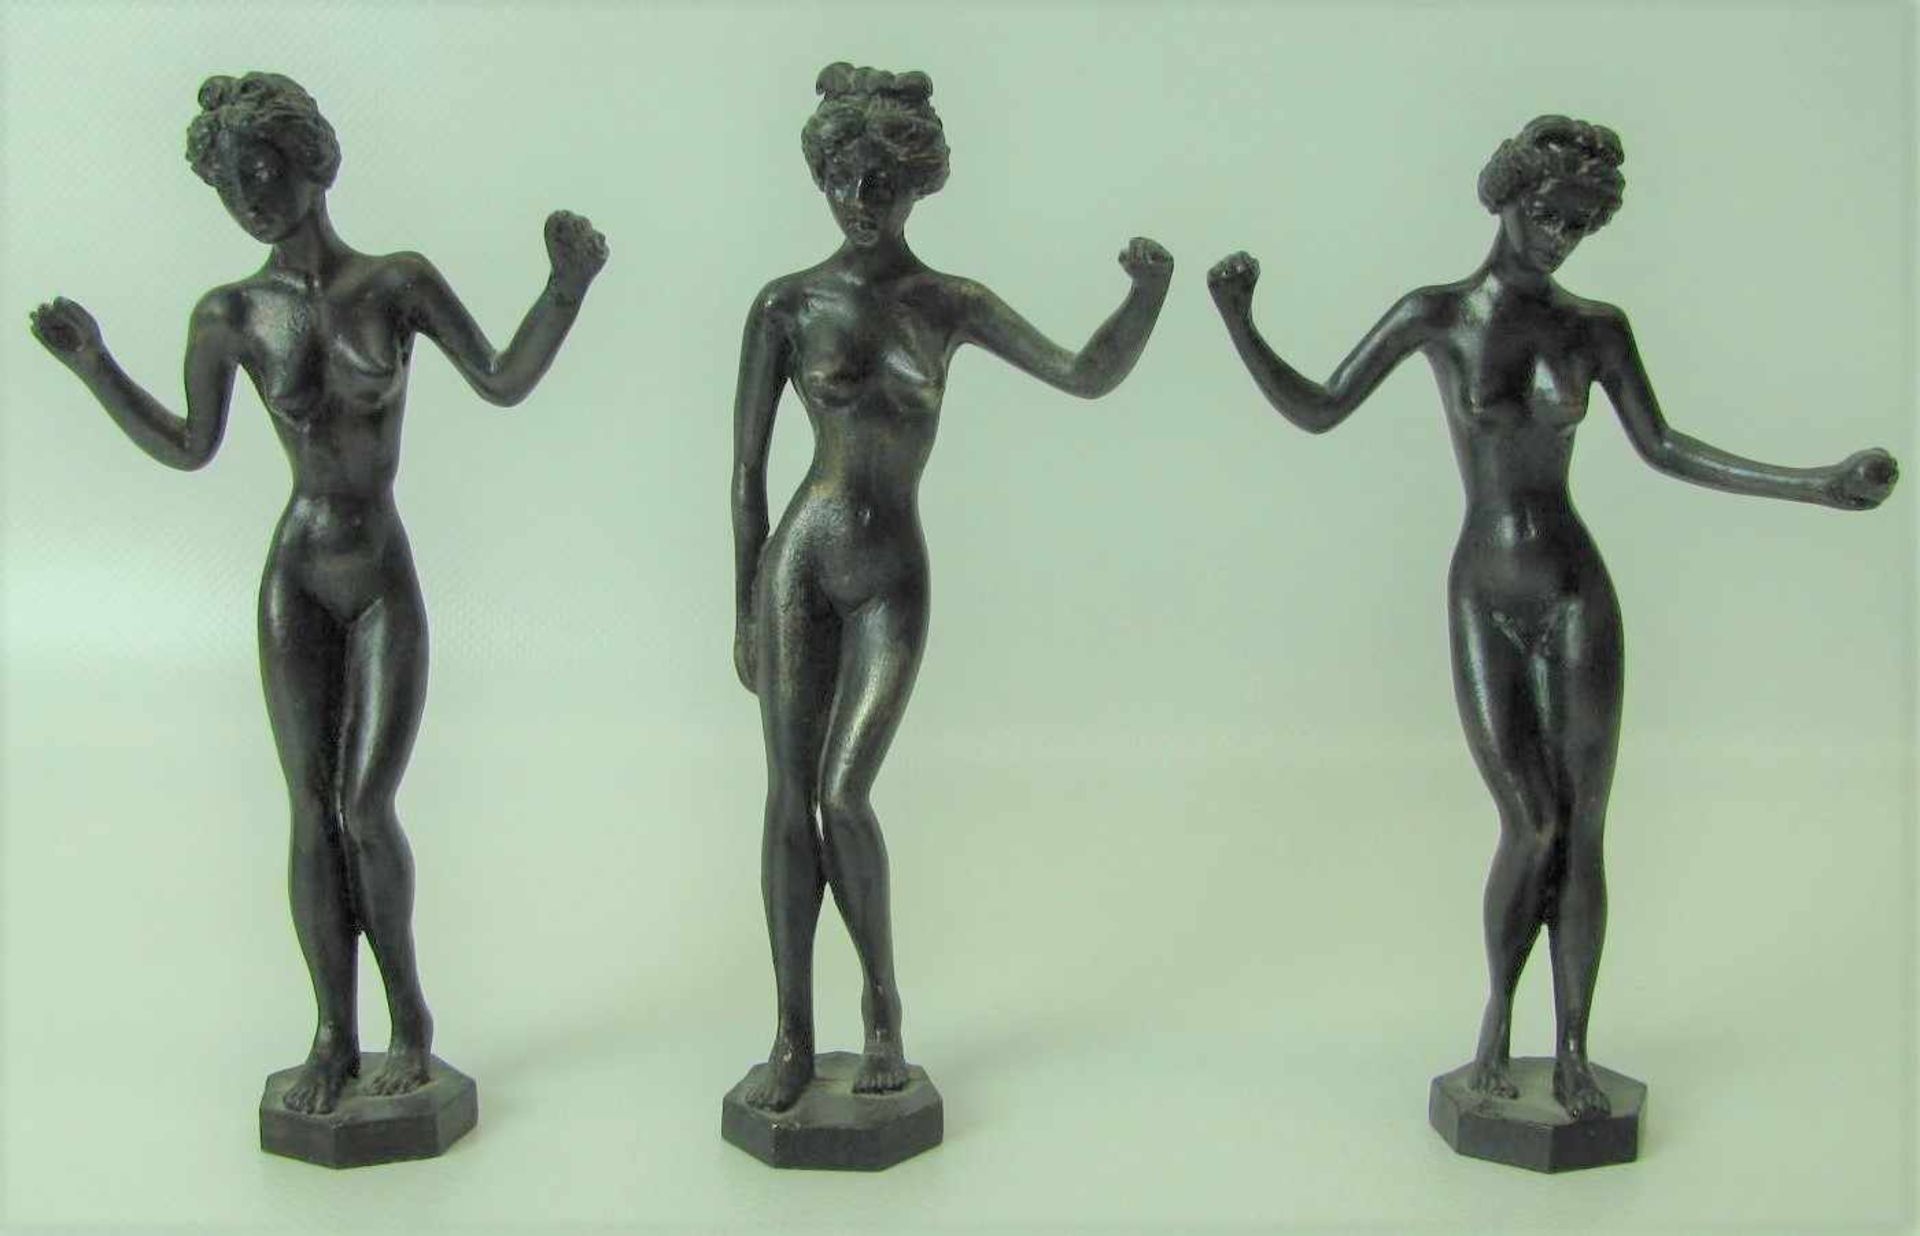 Unbekannt, Die drei Grazien, Bronze, h 13,5 cm. - Bild 2 aus 2